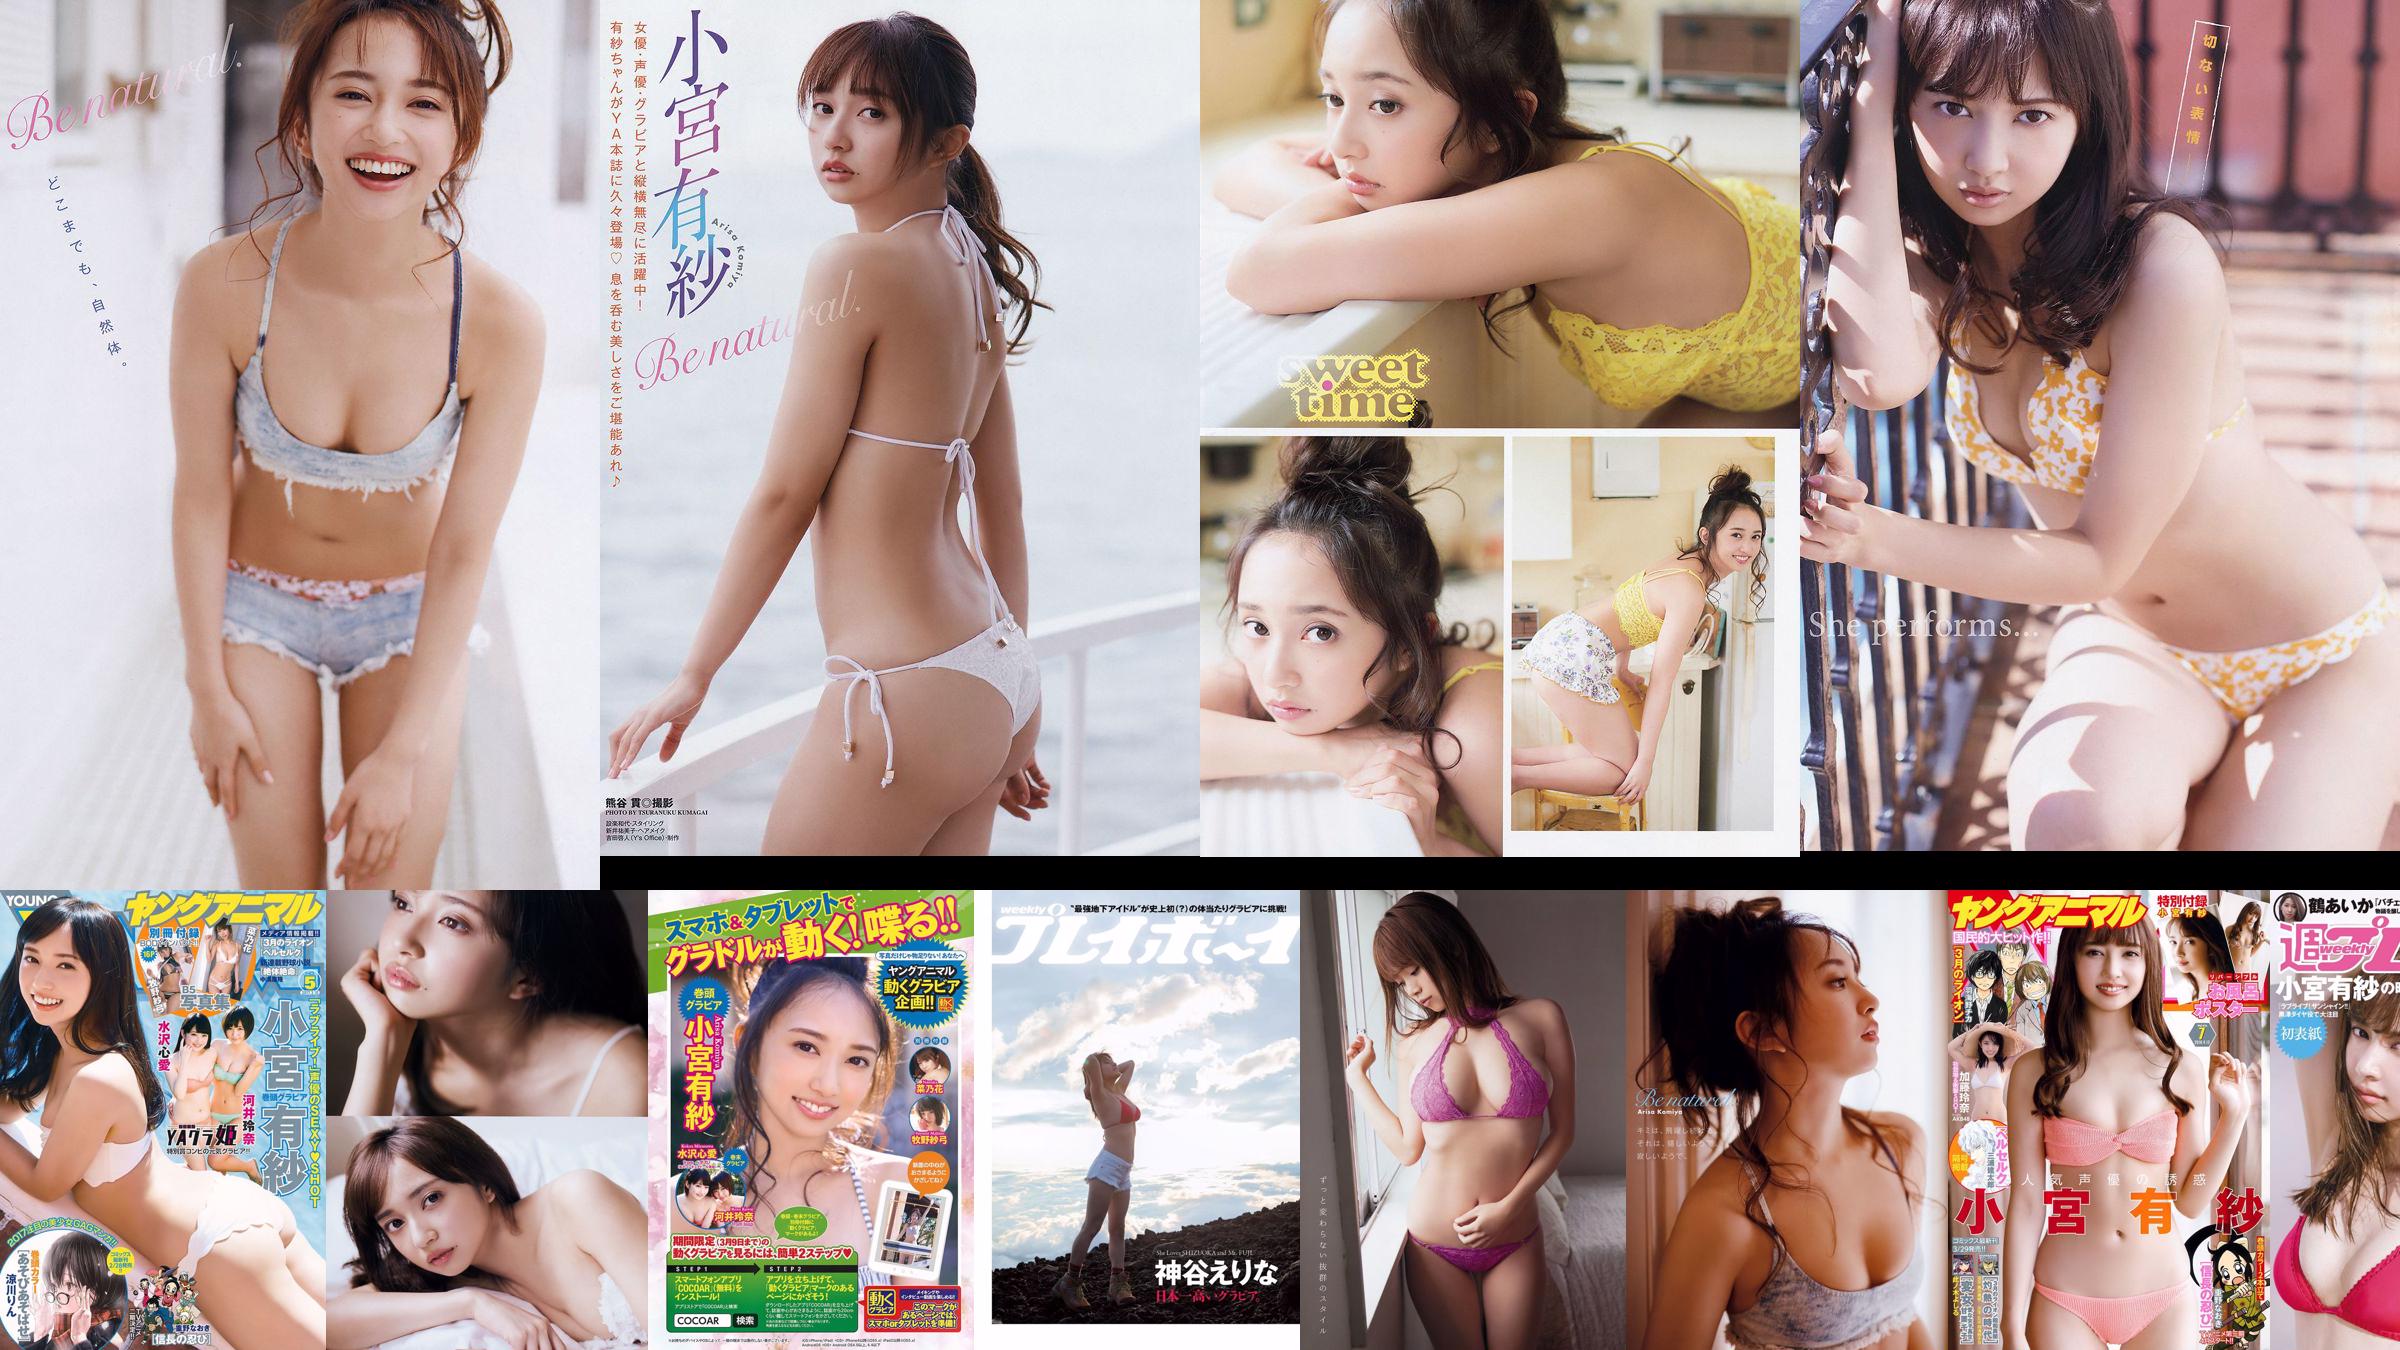 Arisa Komiya Aika Tsuru Sayaka Isoyama Kasumi Arimura Rina Otomo Sei Shiraishi Erina Kamiya [Weekly Playboy] 2017 No.41 照片 No.92e77e 第10頁